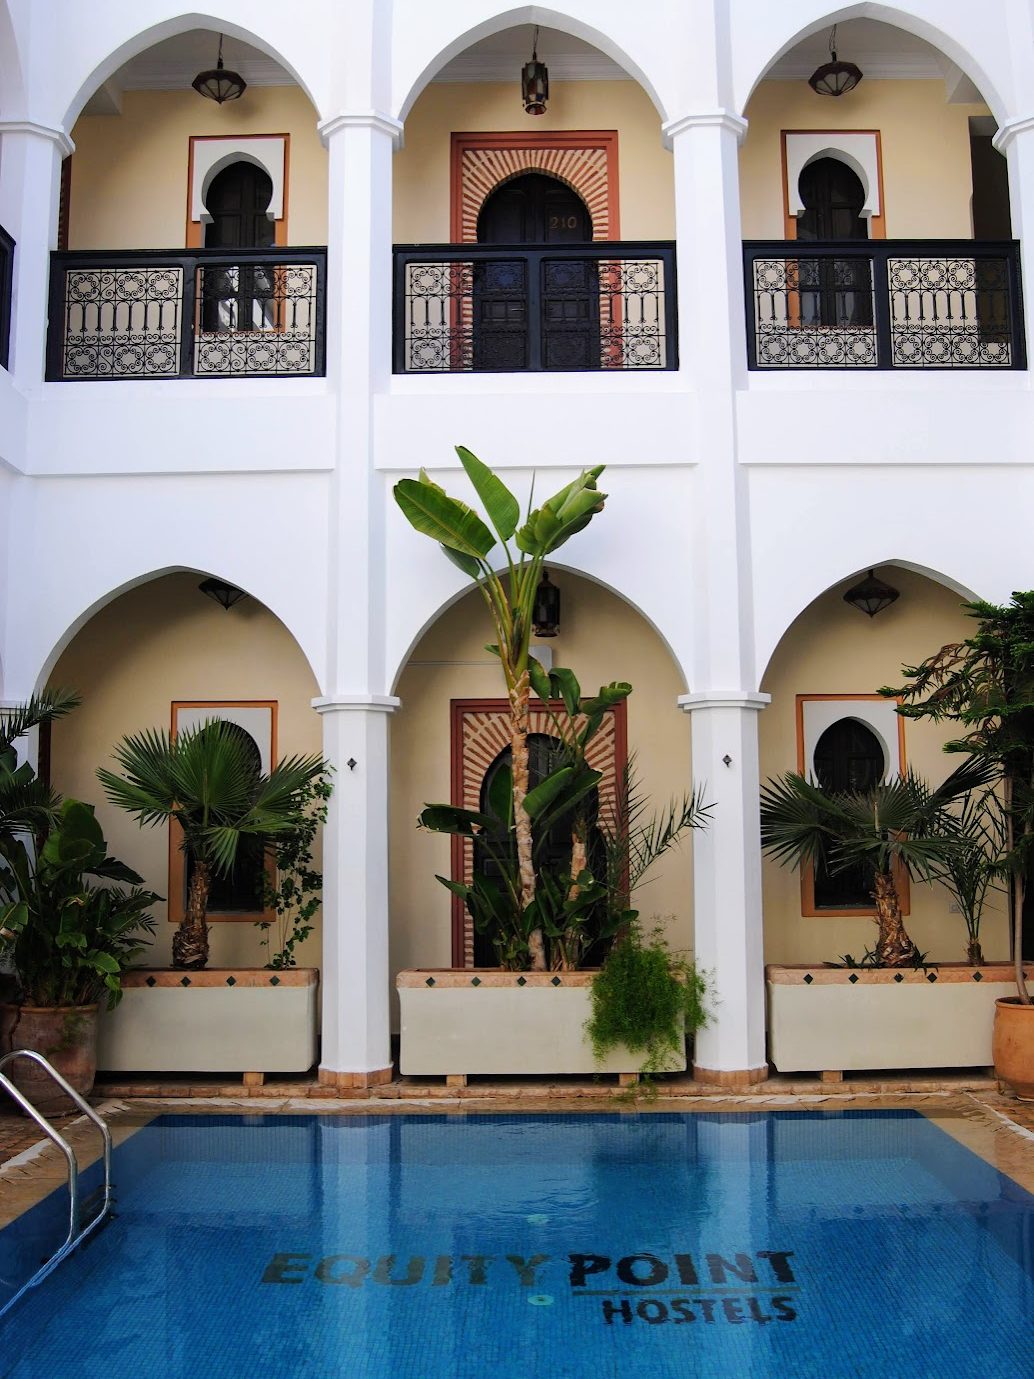 A pool in a riad courtyard